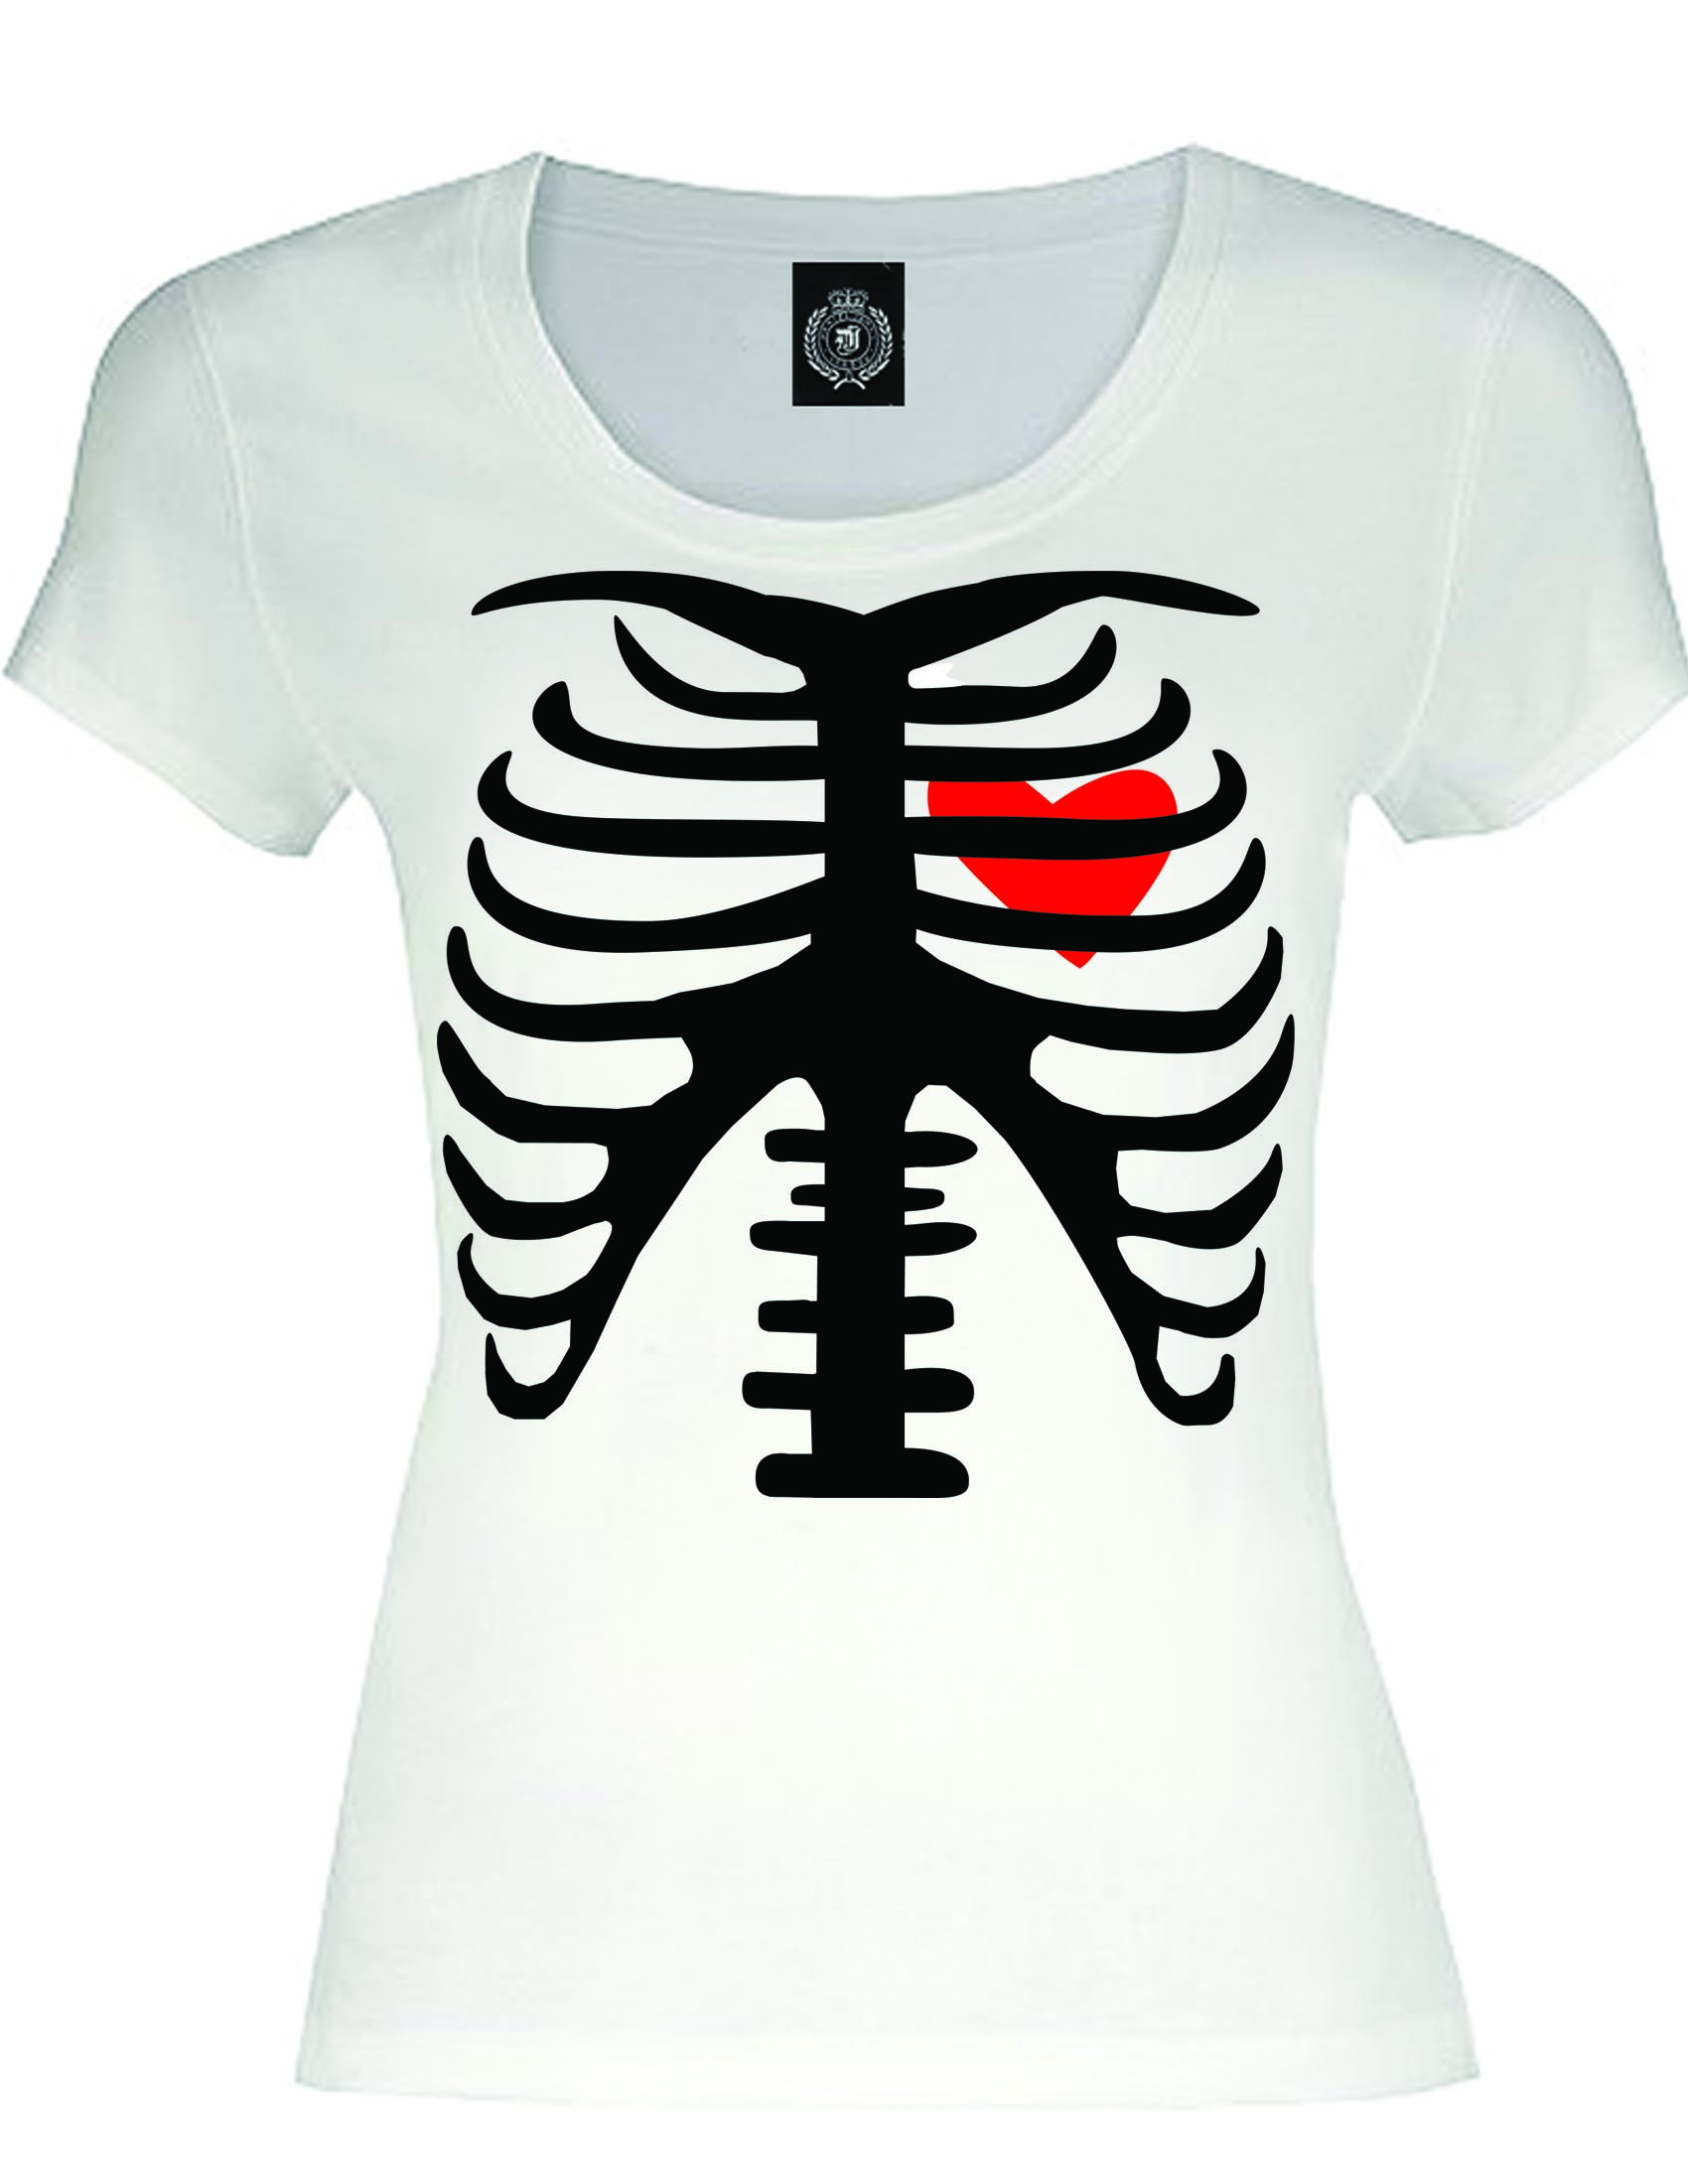  T shirt  Design  ideas irwinleah